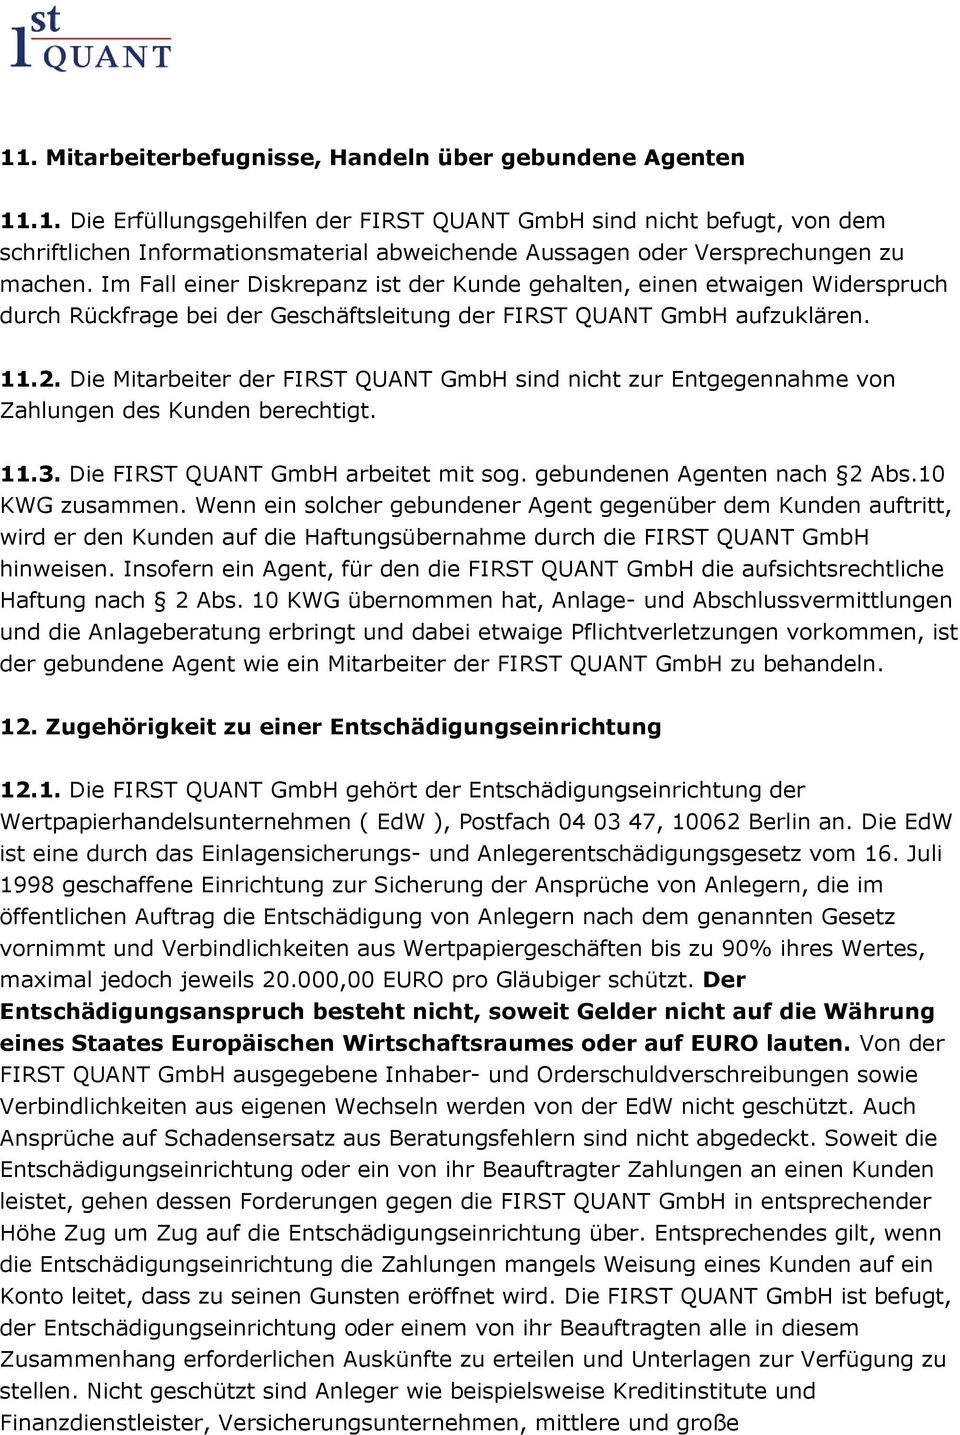 Die Mitarbeiter der FIRST QUANT GmbH sind nicht zur Entgegennahme von Zahlungen des Kunden berechtigt. 11.3. Die FIRST QUANT GmbH arbeitet mit sog. gebundenen Agenten nach 2 Abs.10 KWG zusammen.